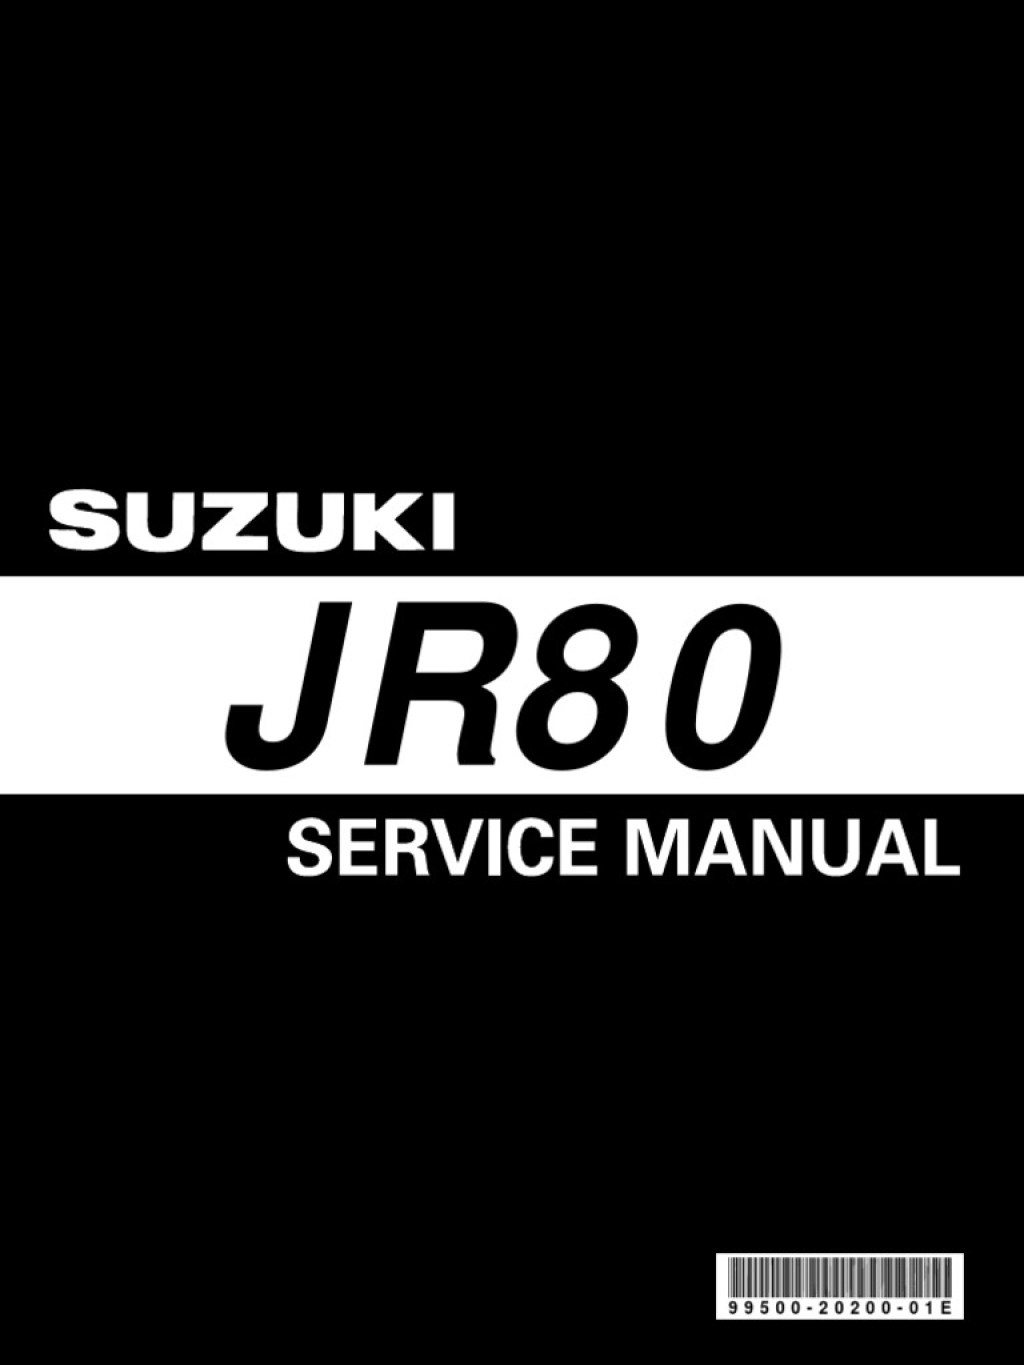 suzuki jr80 service manual - Suzuki JR 